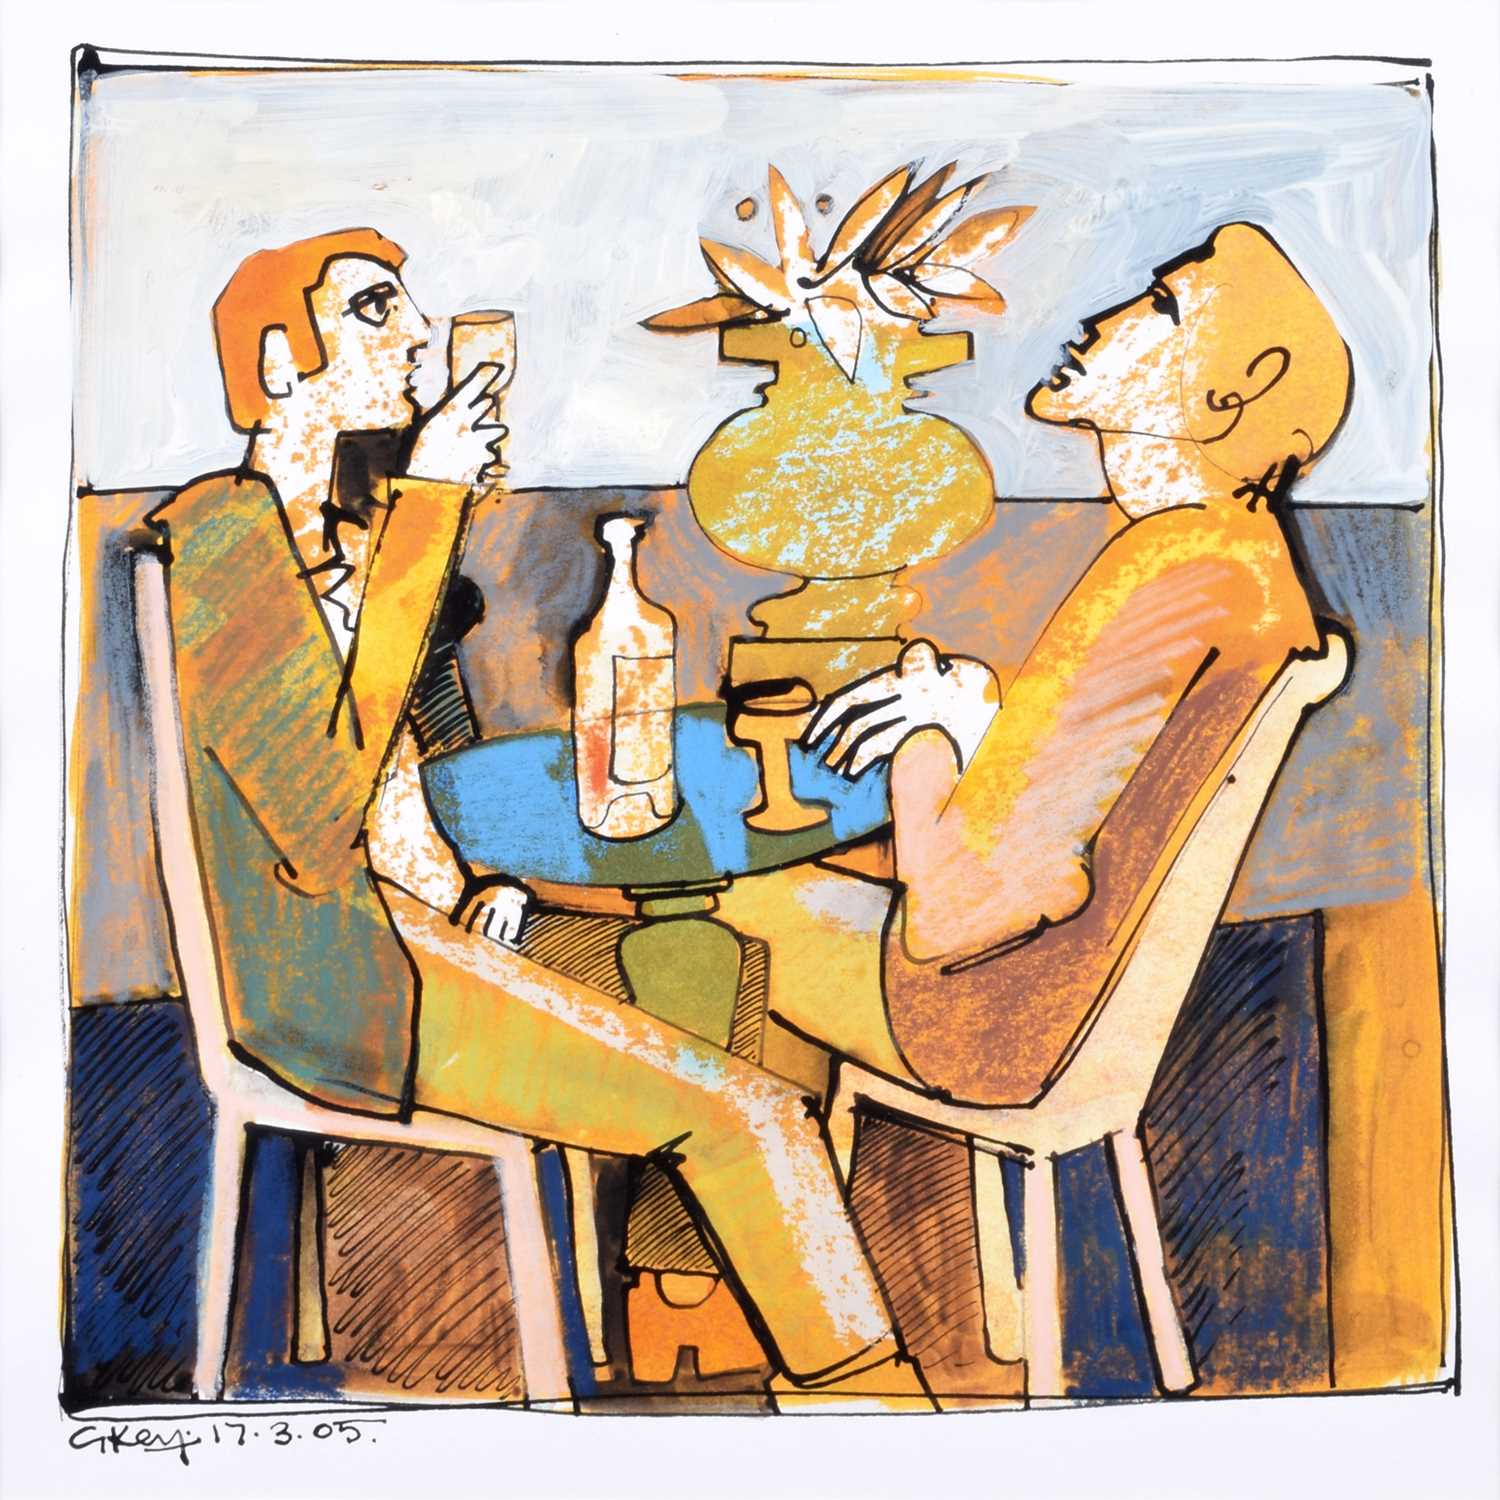 Geoffrey Key (British 1941-) "Cafe Bar Figures"